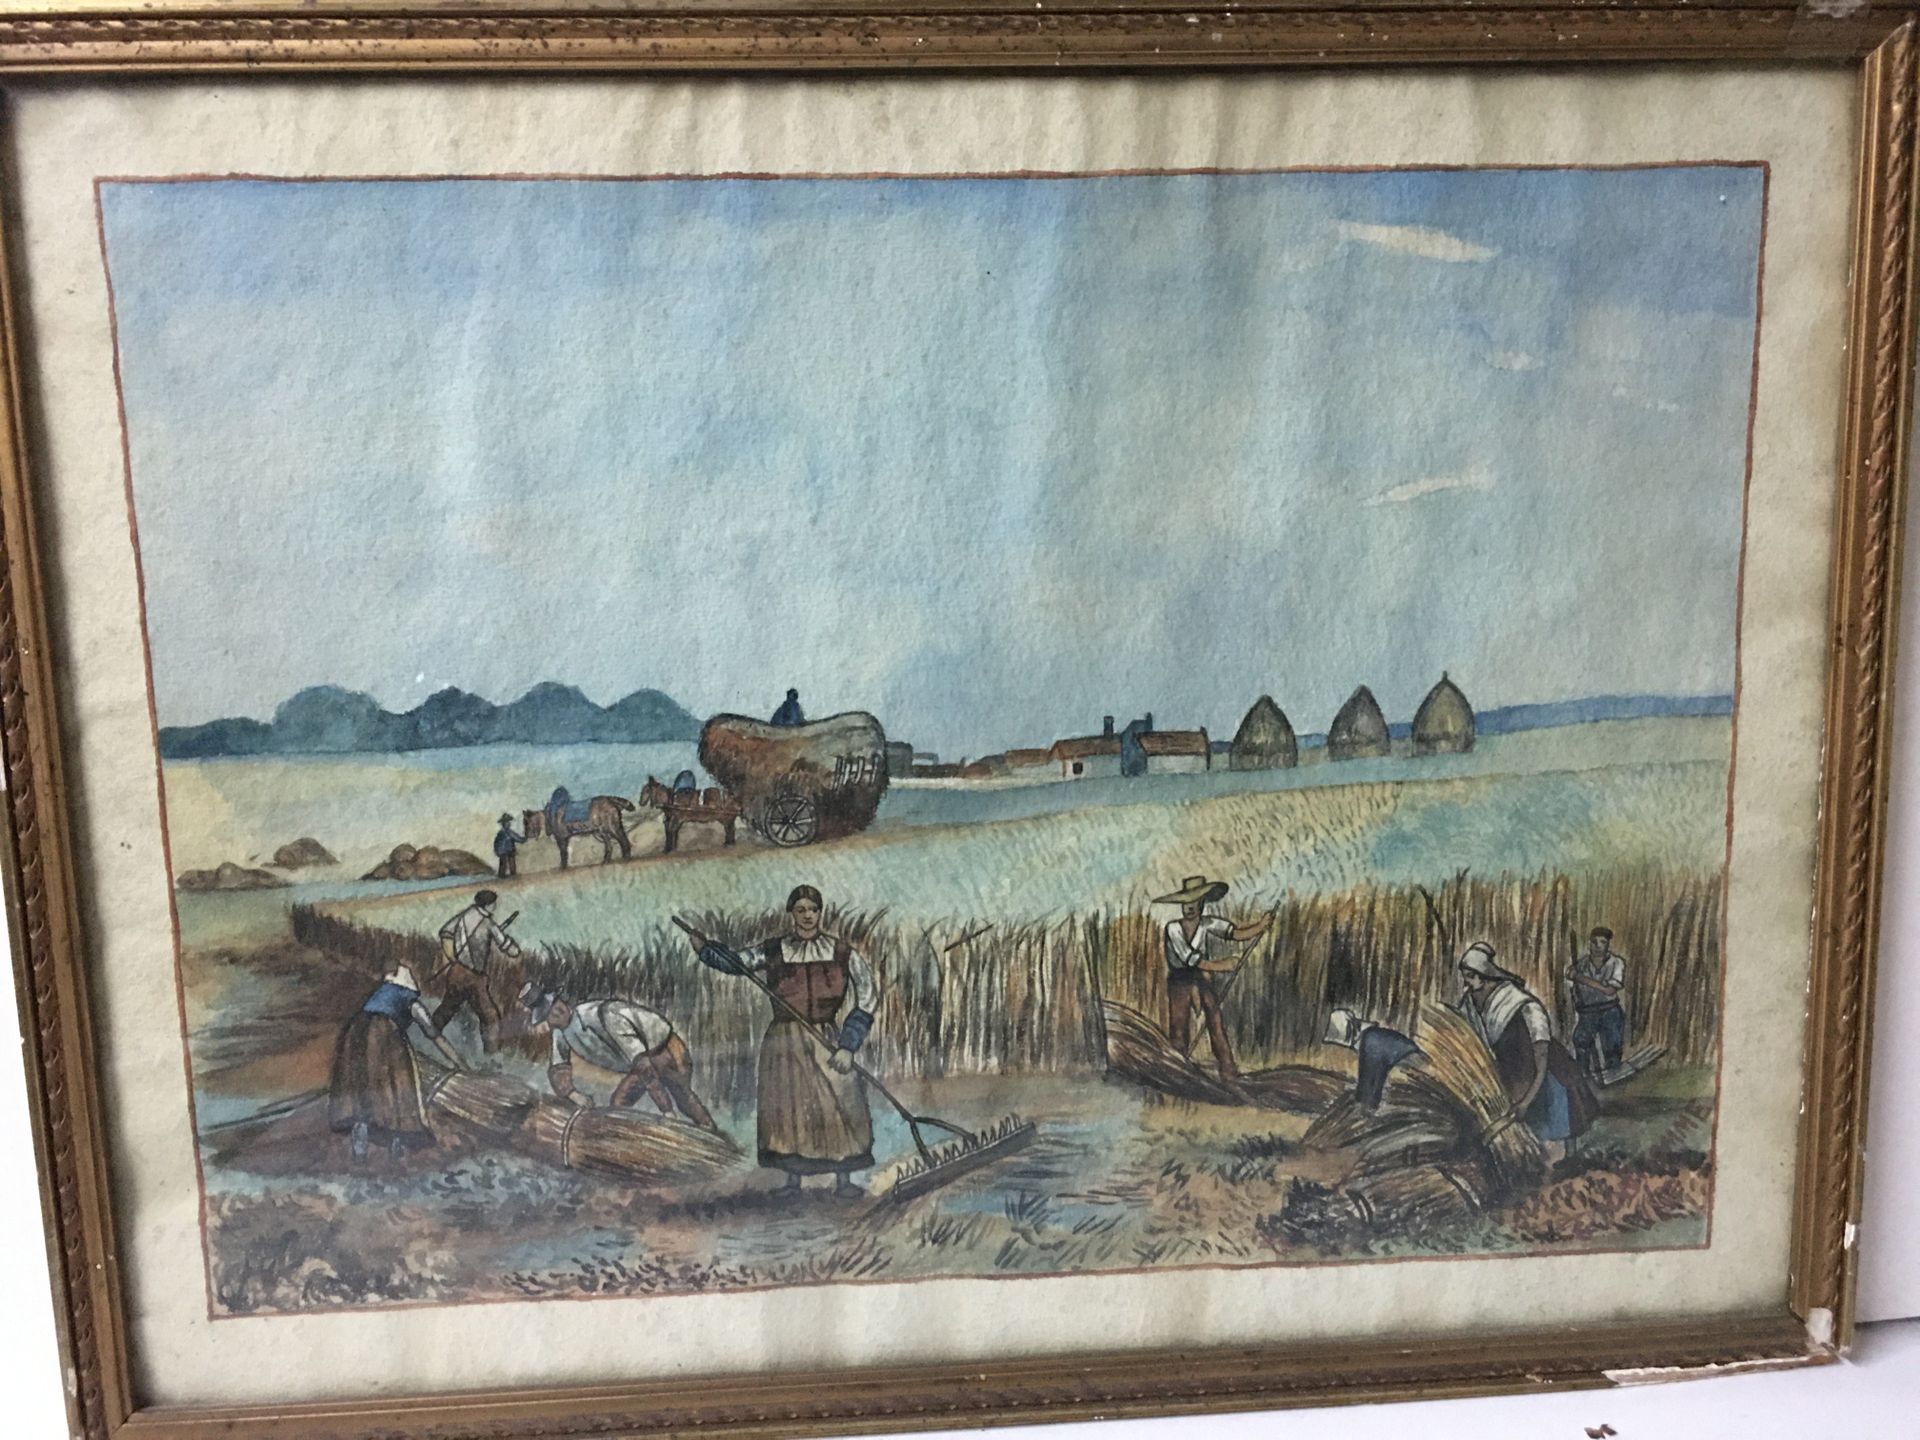 Null G.Bonhomme (十九至二十世纪) 纸上天真的水彩画，展示了一个打草的场景，43x31厘米，玻璃框内（纸张发黄）。